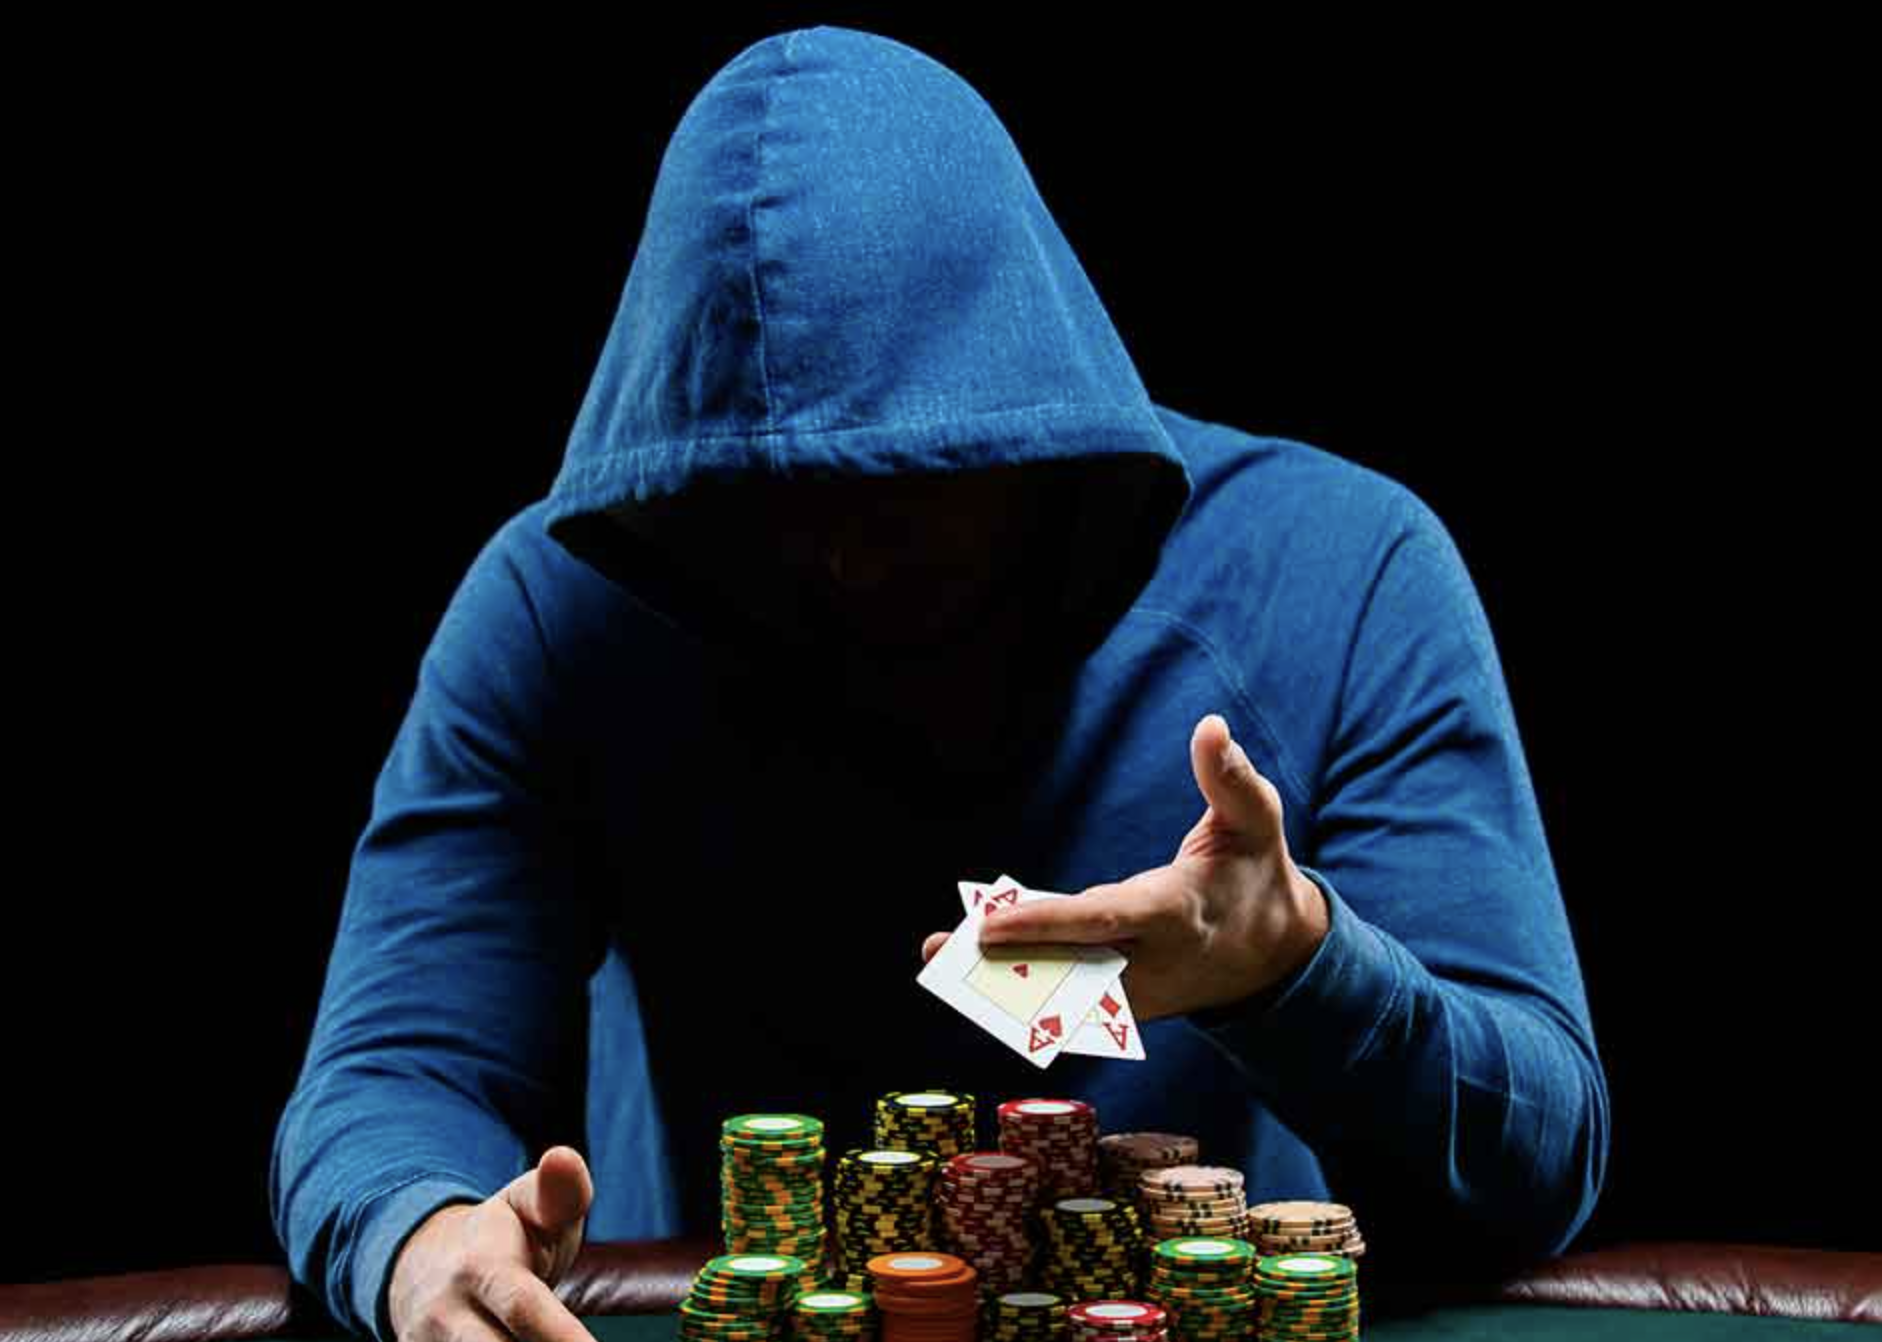 ludopatia-gioco-azzardo-problematico